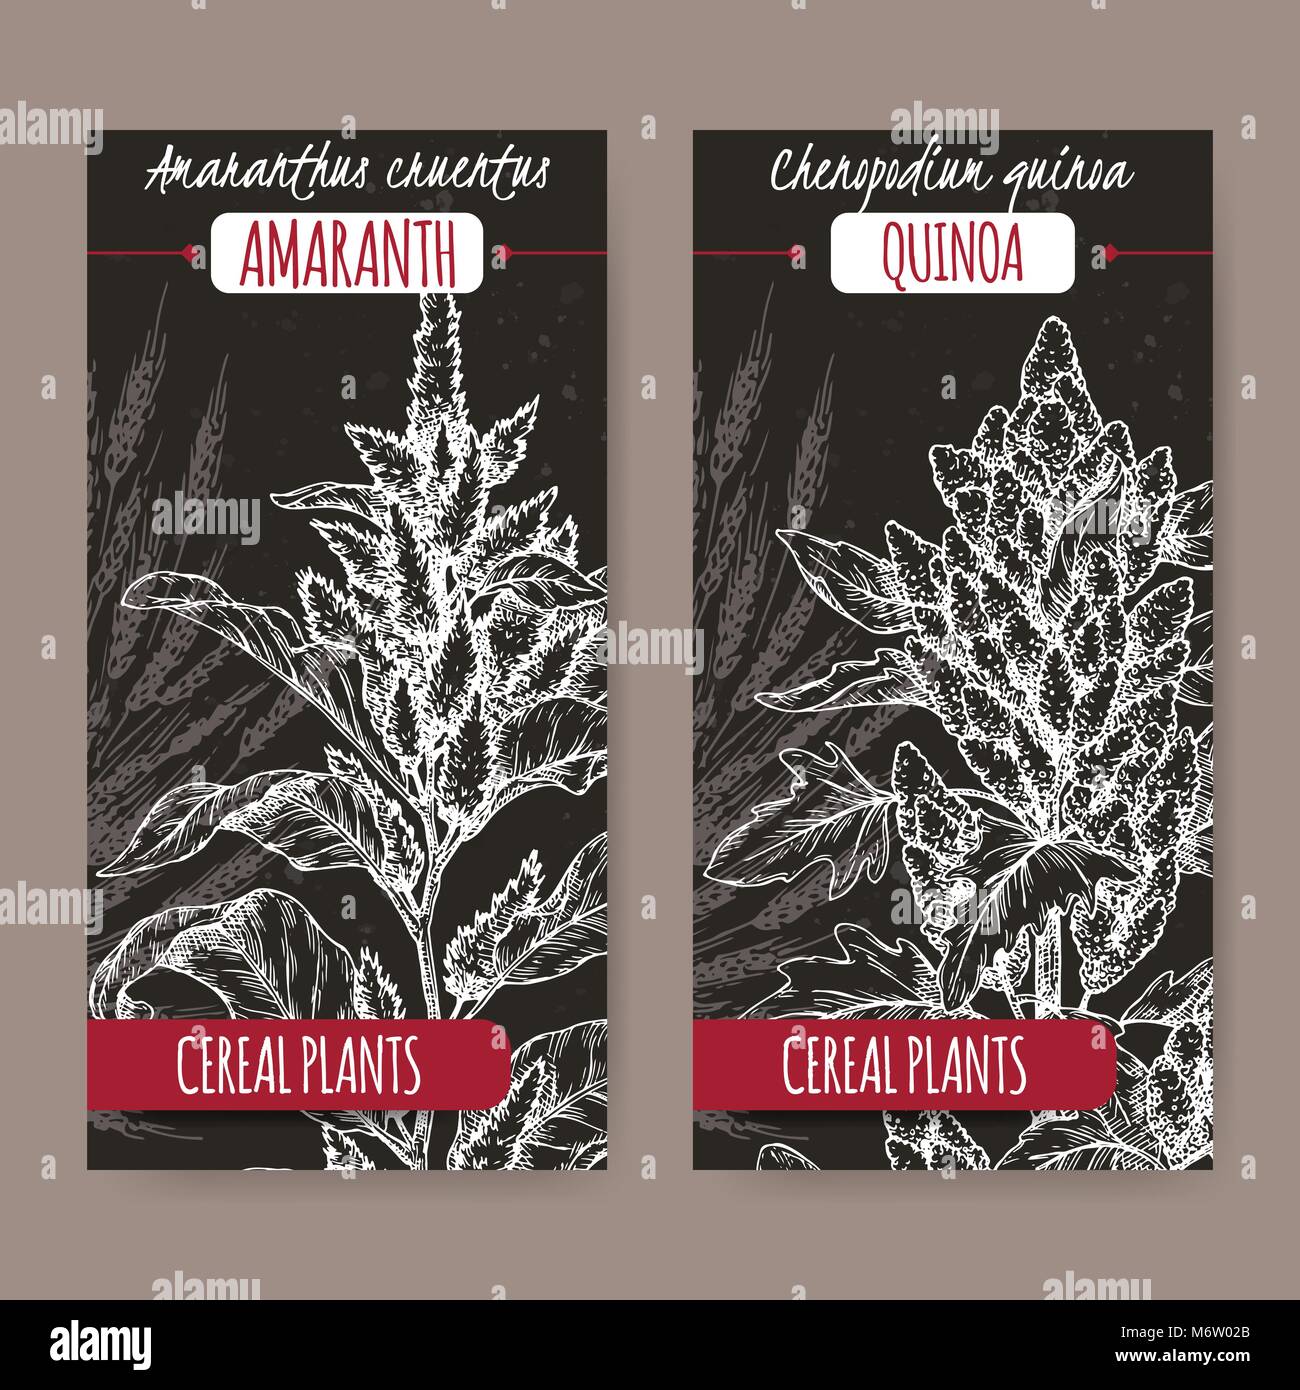 Deux étiquettes avec Amaranthus cruentus aka amaranth et Chenopodium quinoa sketch sur noir. Collection de plantes céréalières. Illustration de Vecteur